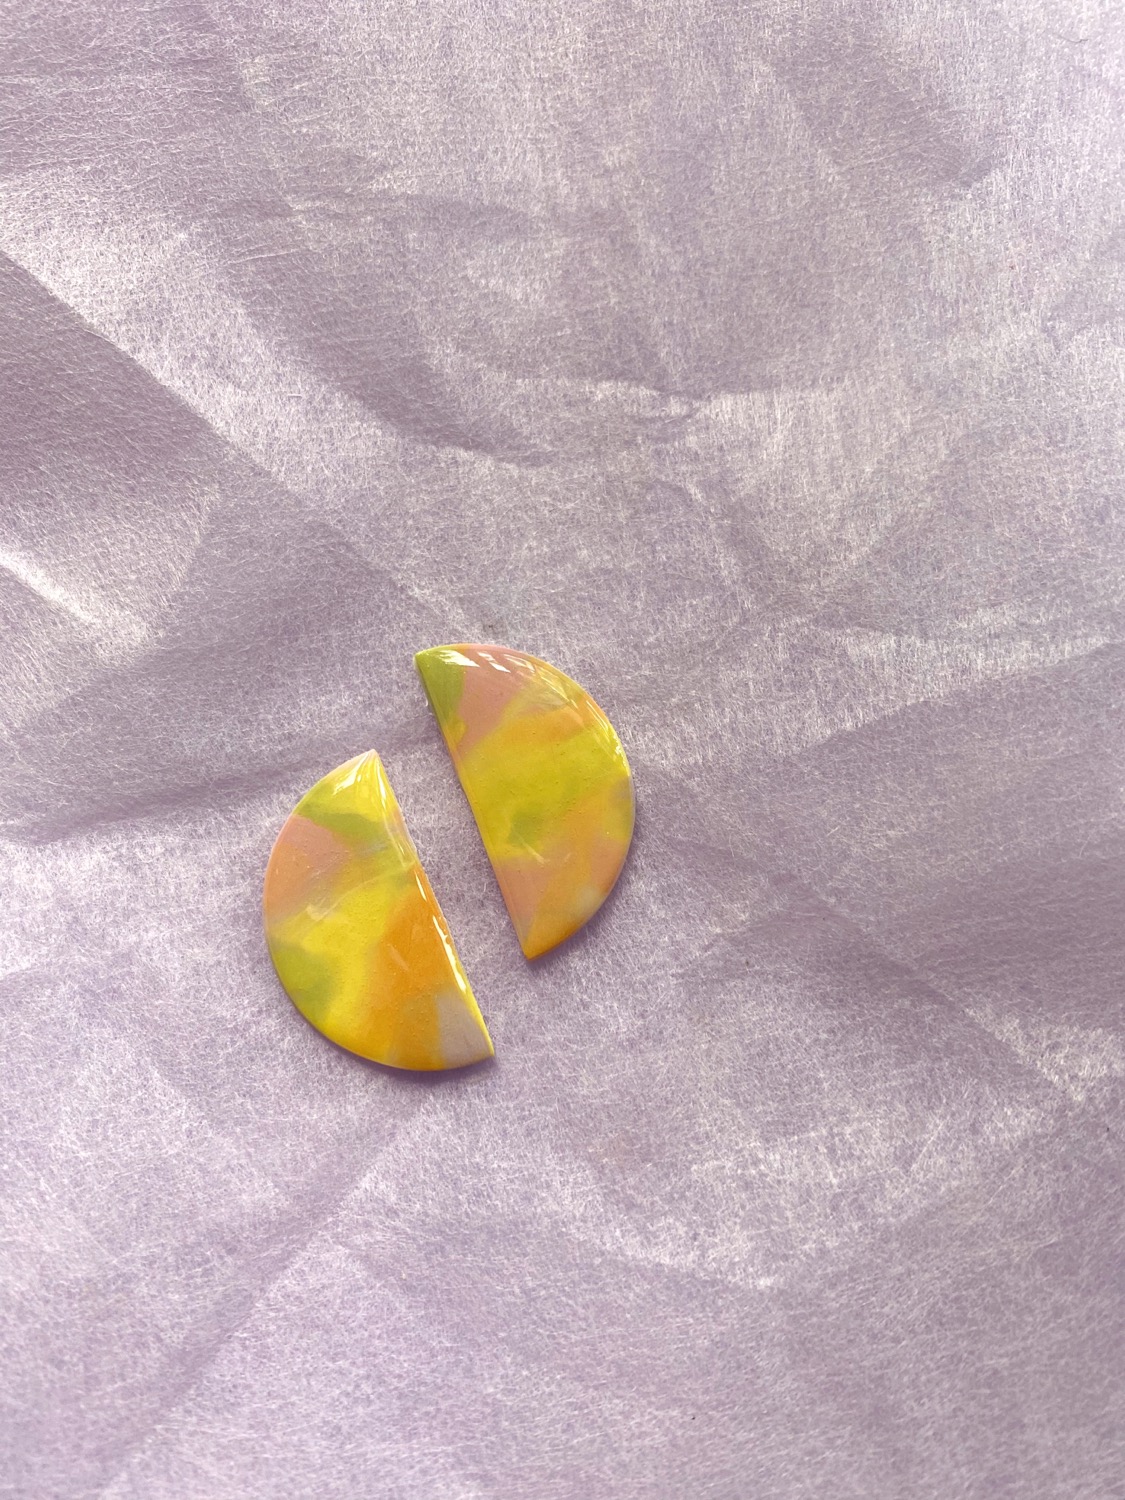 Fruity Pop - Half Moon Studs, Polymer Clay Earrings